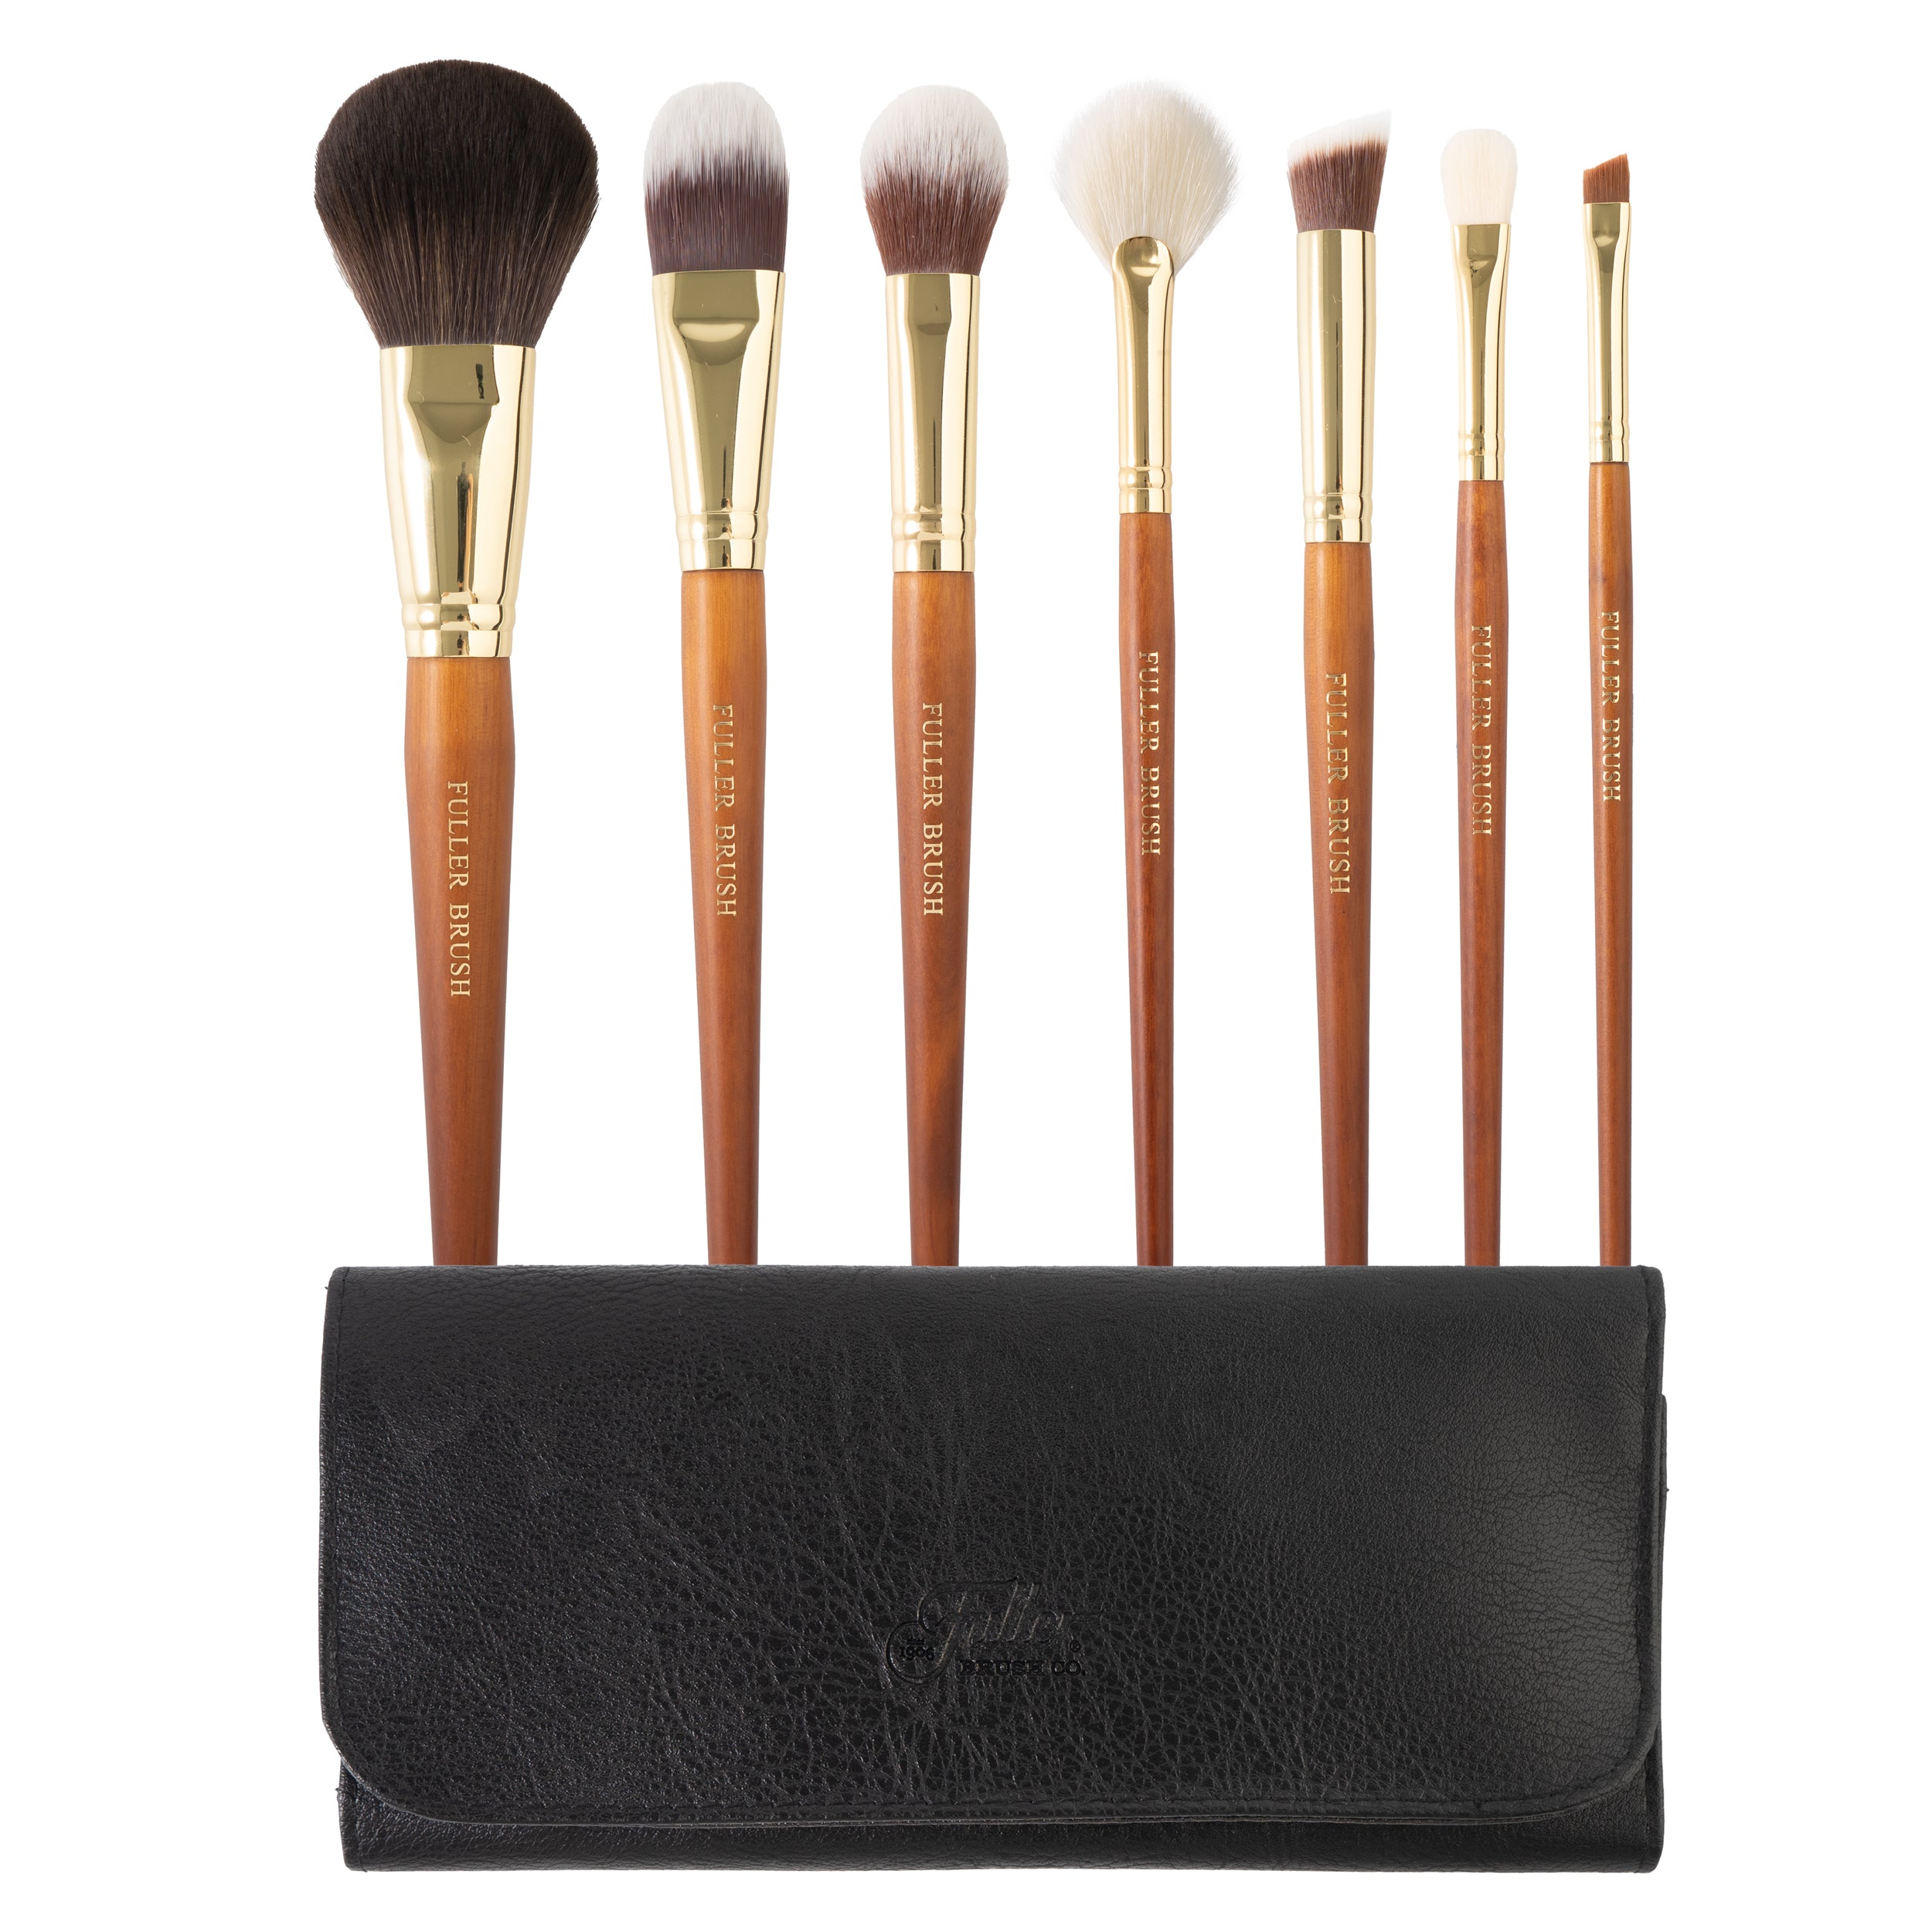 Fuller Brush Cosmetic Brush Set with Case (set of 7 Brushes)